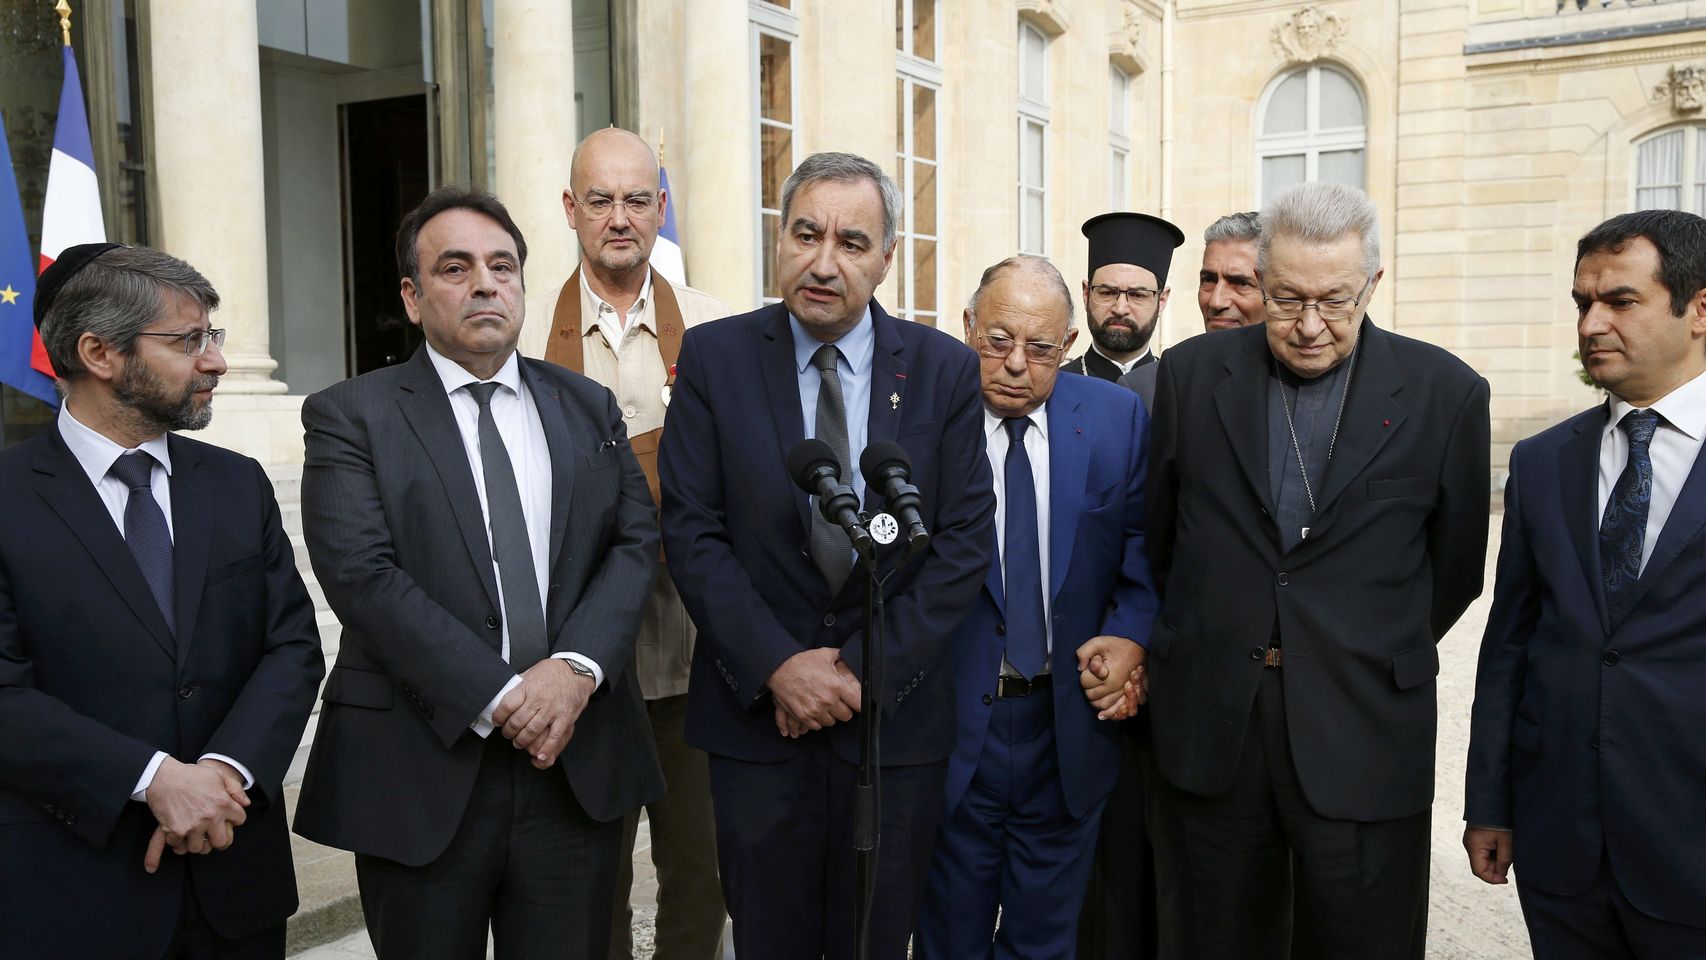 Francia convoca reunión con expertos y líderes musulmanes